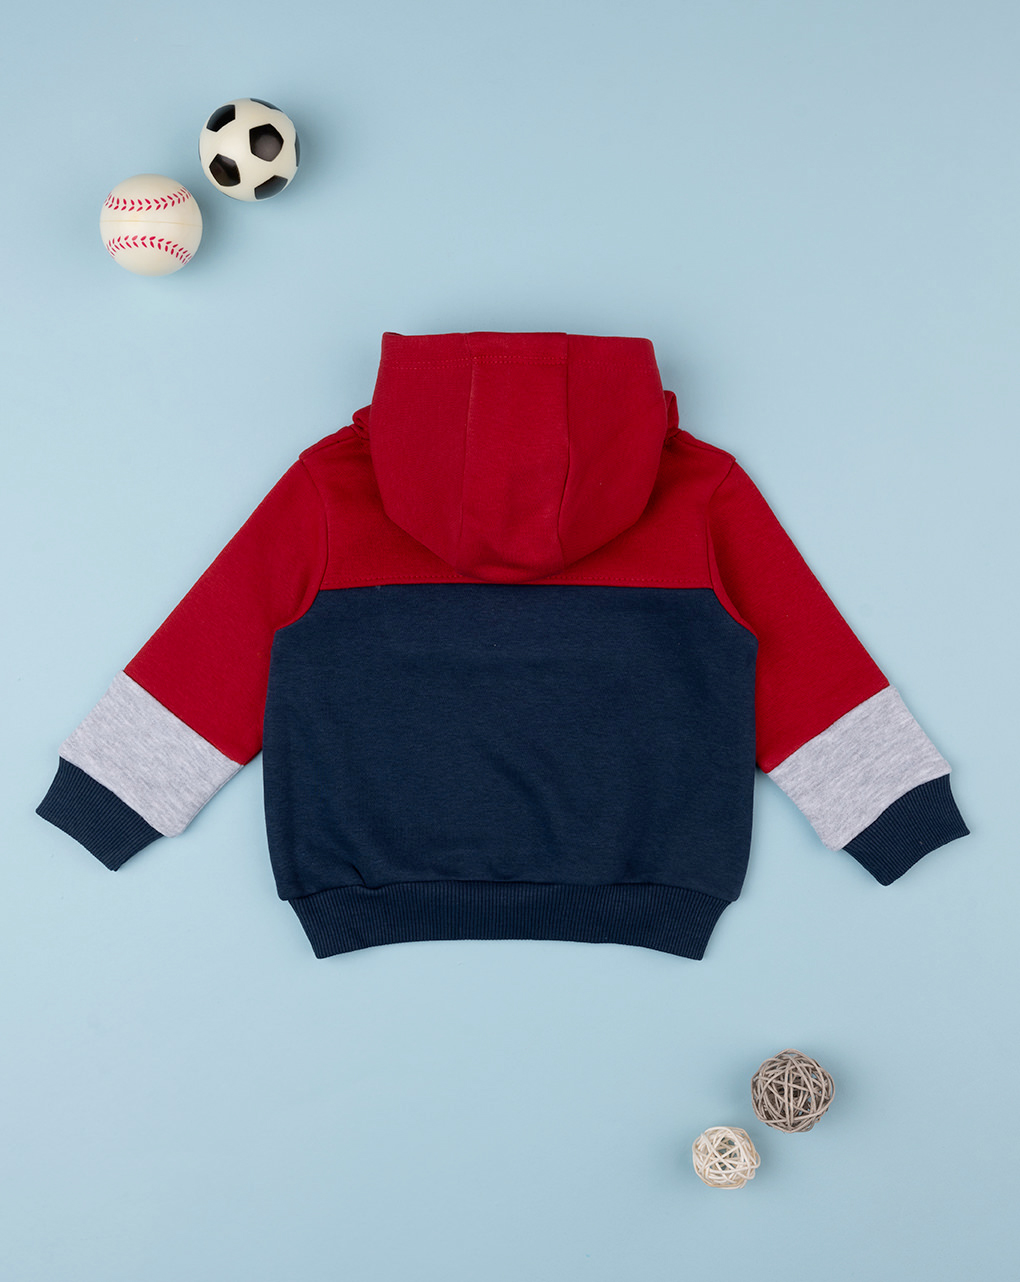 βρεφική μπλούζα φούτερ μπλε/κόκκινη play για αγόρι - Prénatal